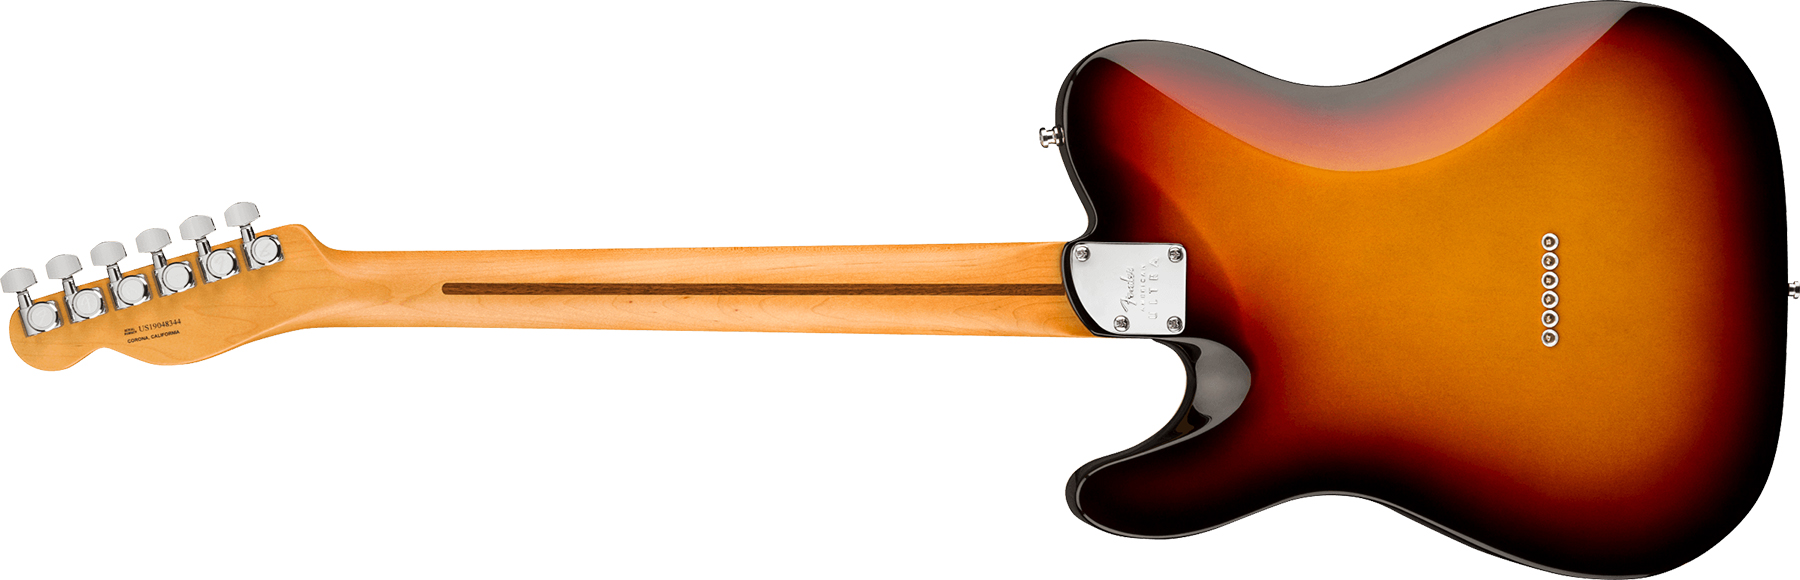 Fender Tele American Ultra 2019 Usa Mn - Ultraburst - E-Gitarre in Teleform - Variation 1